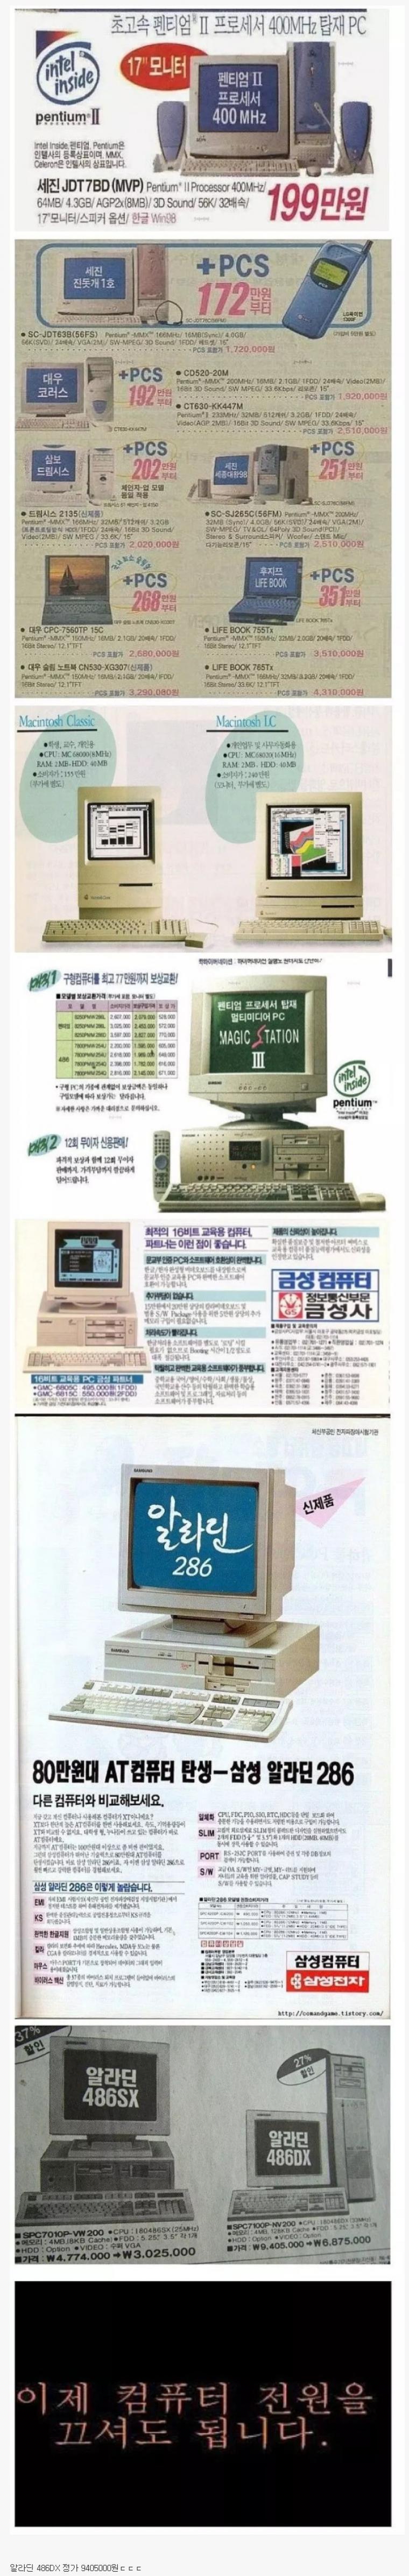 대한민국 90년대 컴퓨터 가격